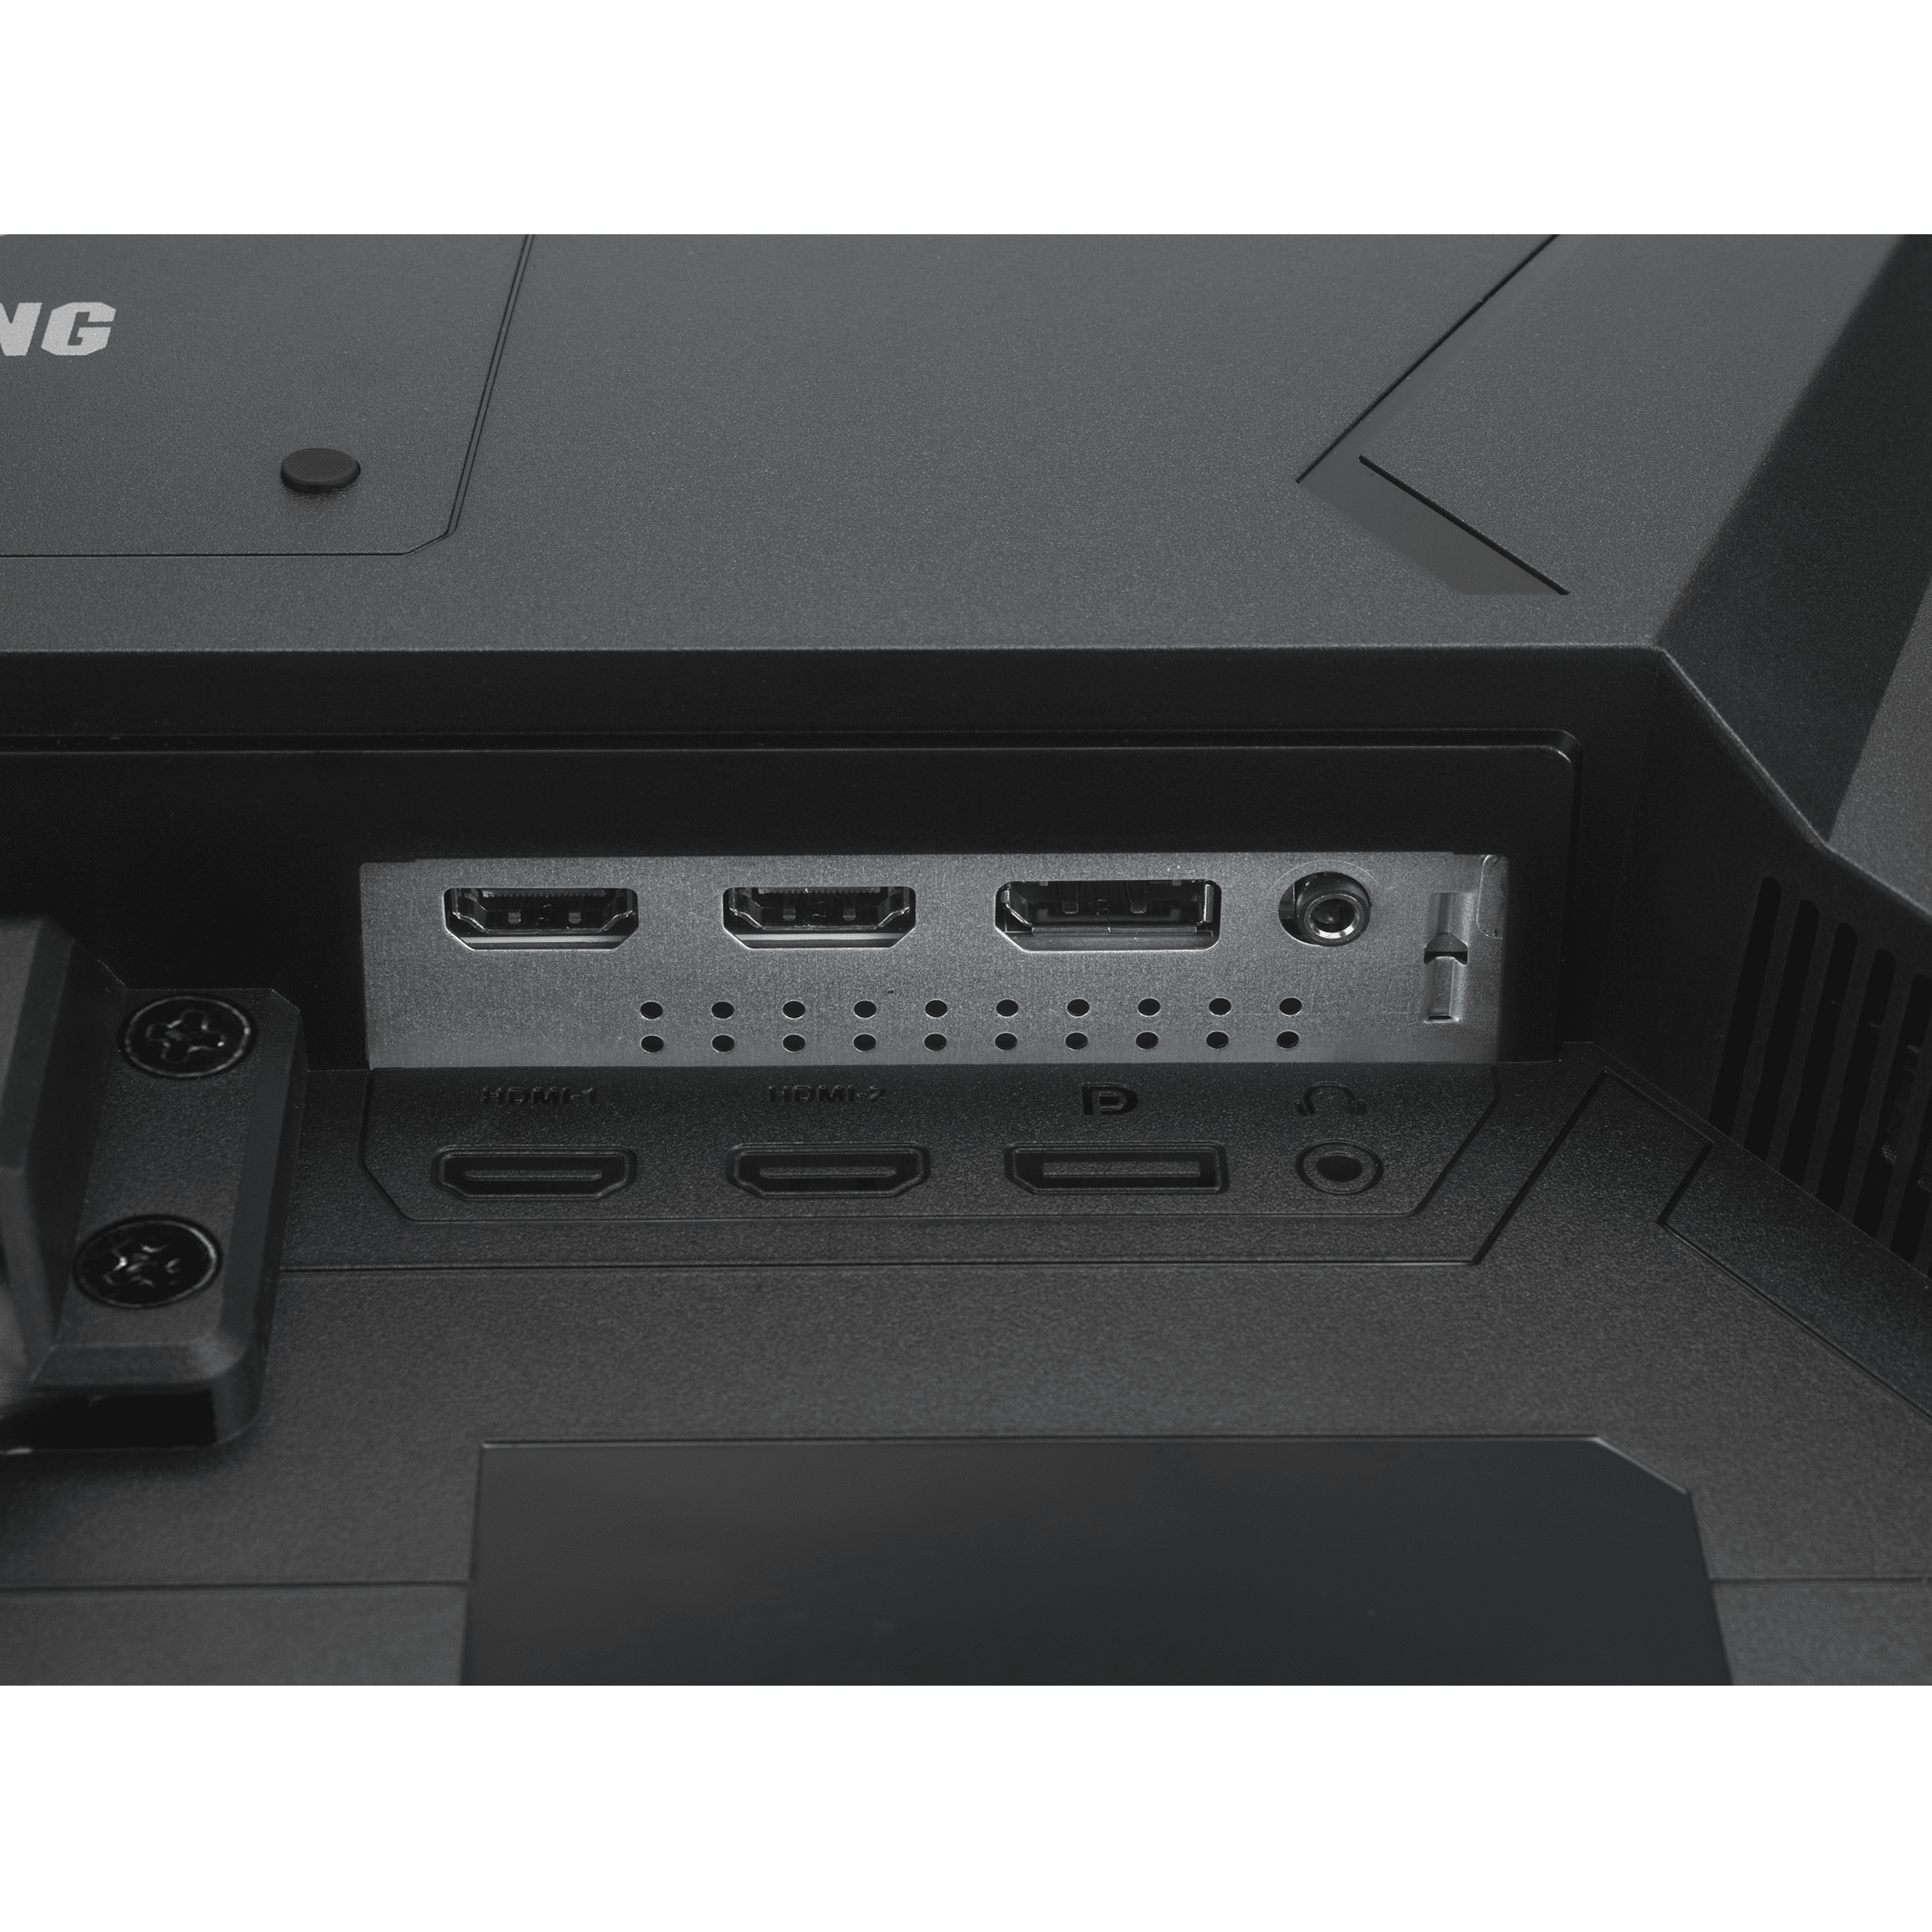 ASUS TUF Gaming VG249Q1Aゲーミングモニター347kg29kg付属品